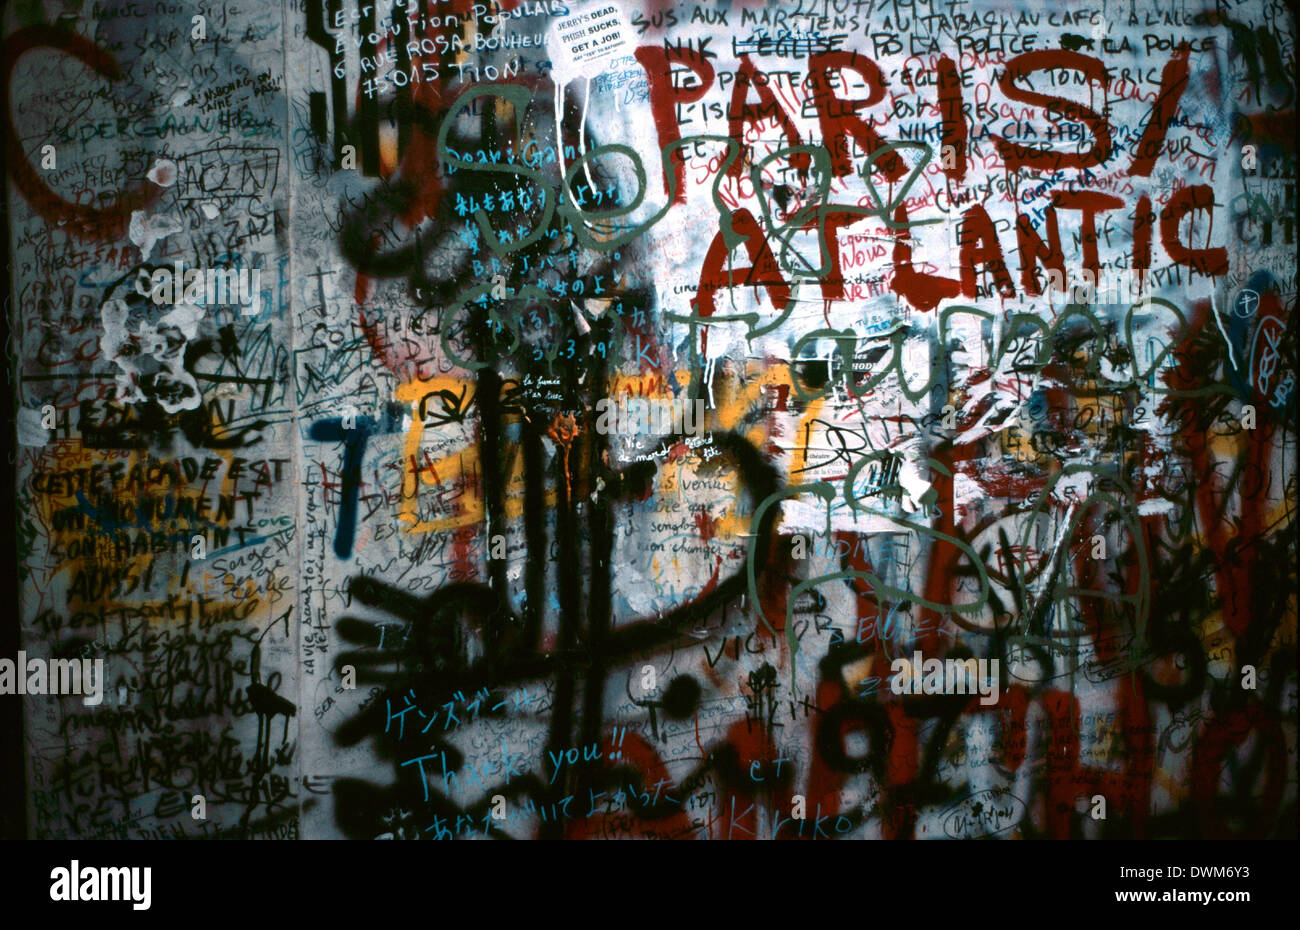 AJAXNETPHOTO.12 AVRIL 1998. PARIS, FRANCE. Messages graffitti sur le mur et la porte devant la résidence Serge Gainsbourg. Photo : Jonathan Eastland Banque D'Images